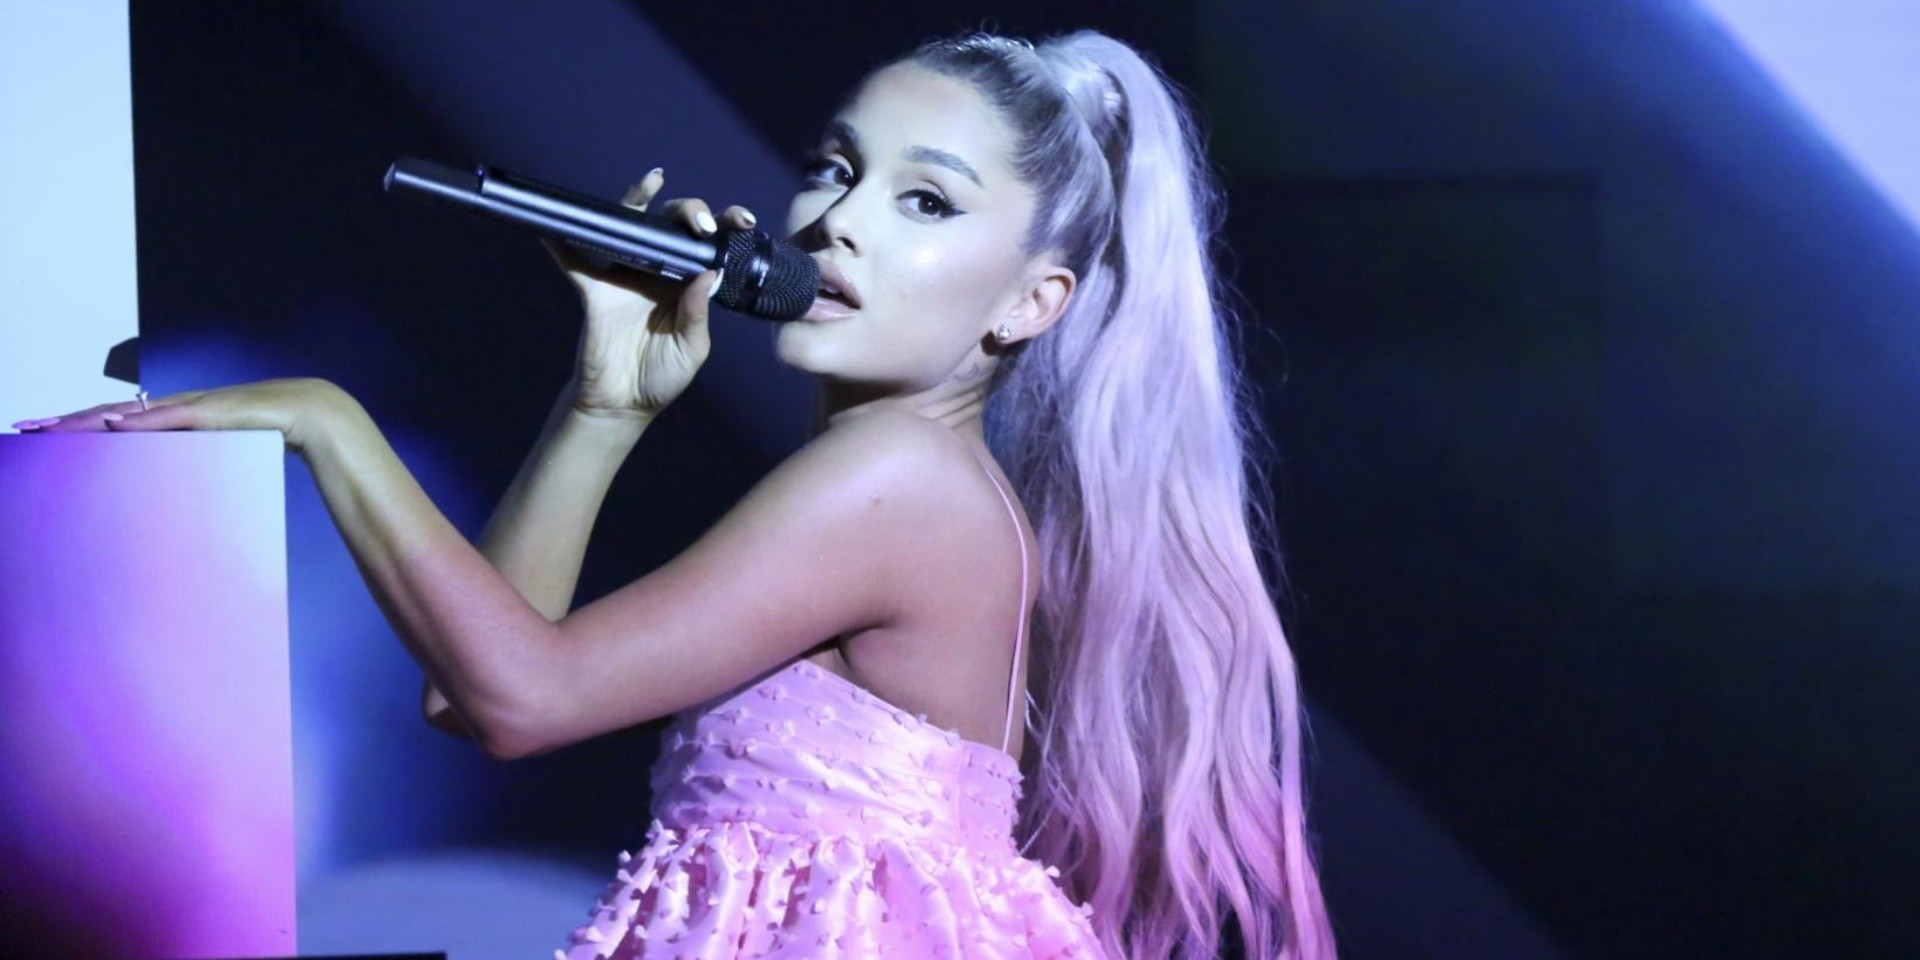 Ariana Grande shares delightful cover of Minnie Riperton's 'Lovin' You'